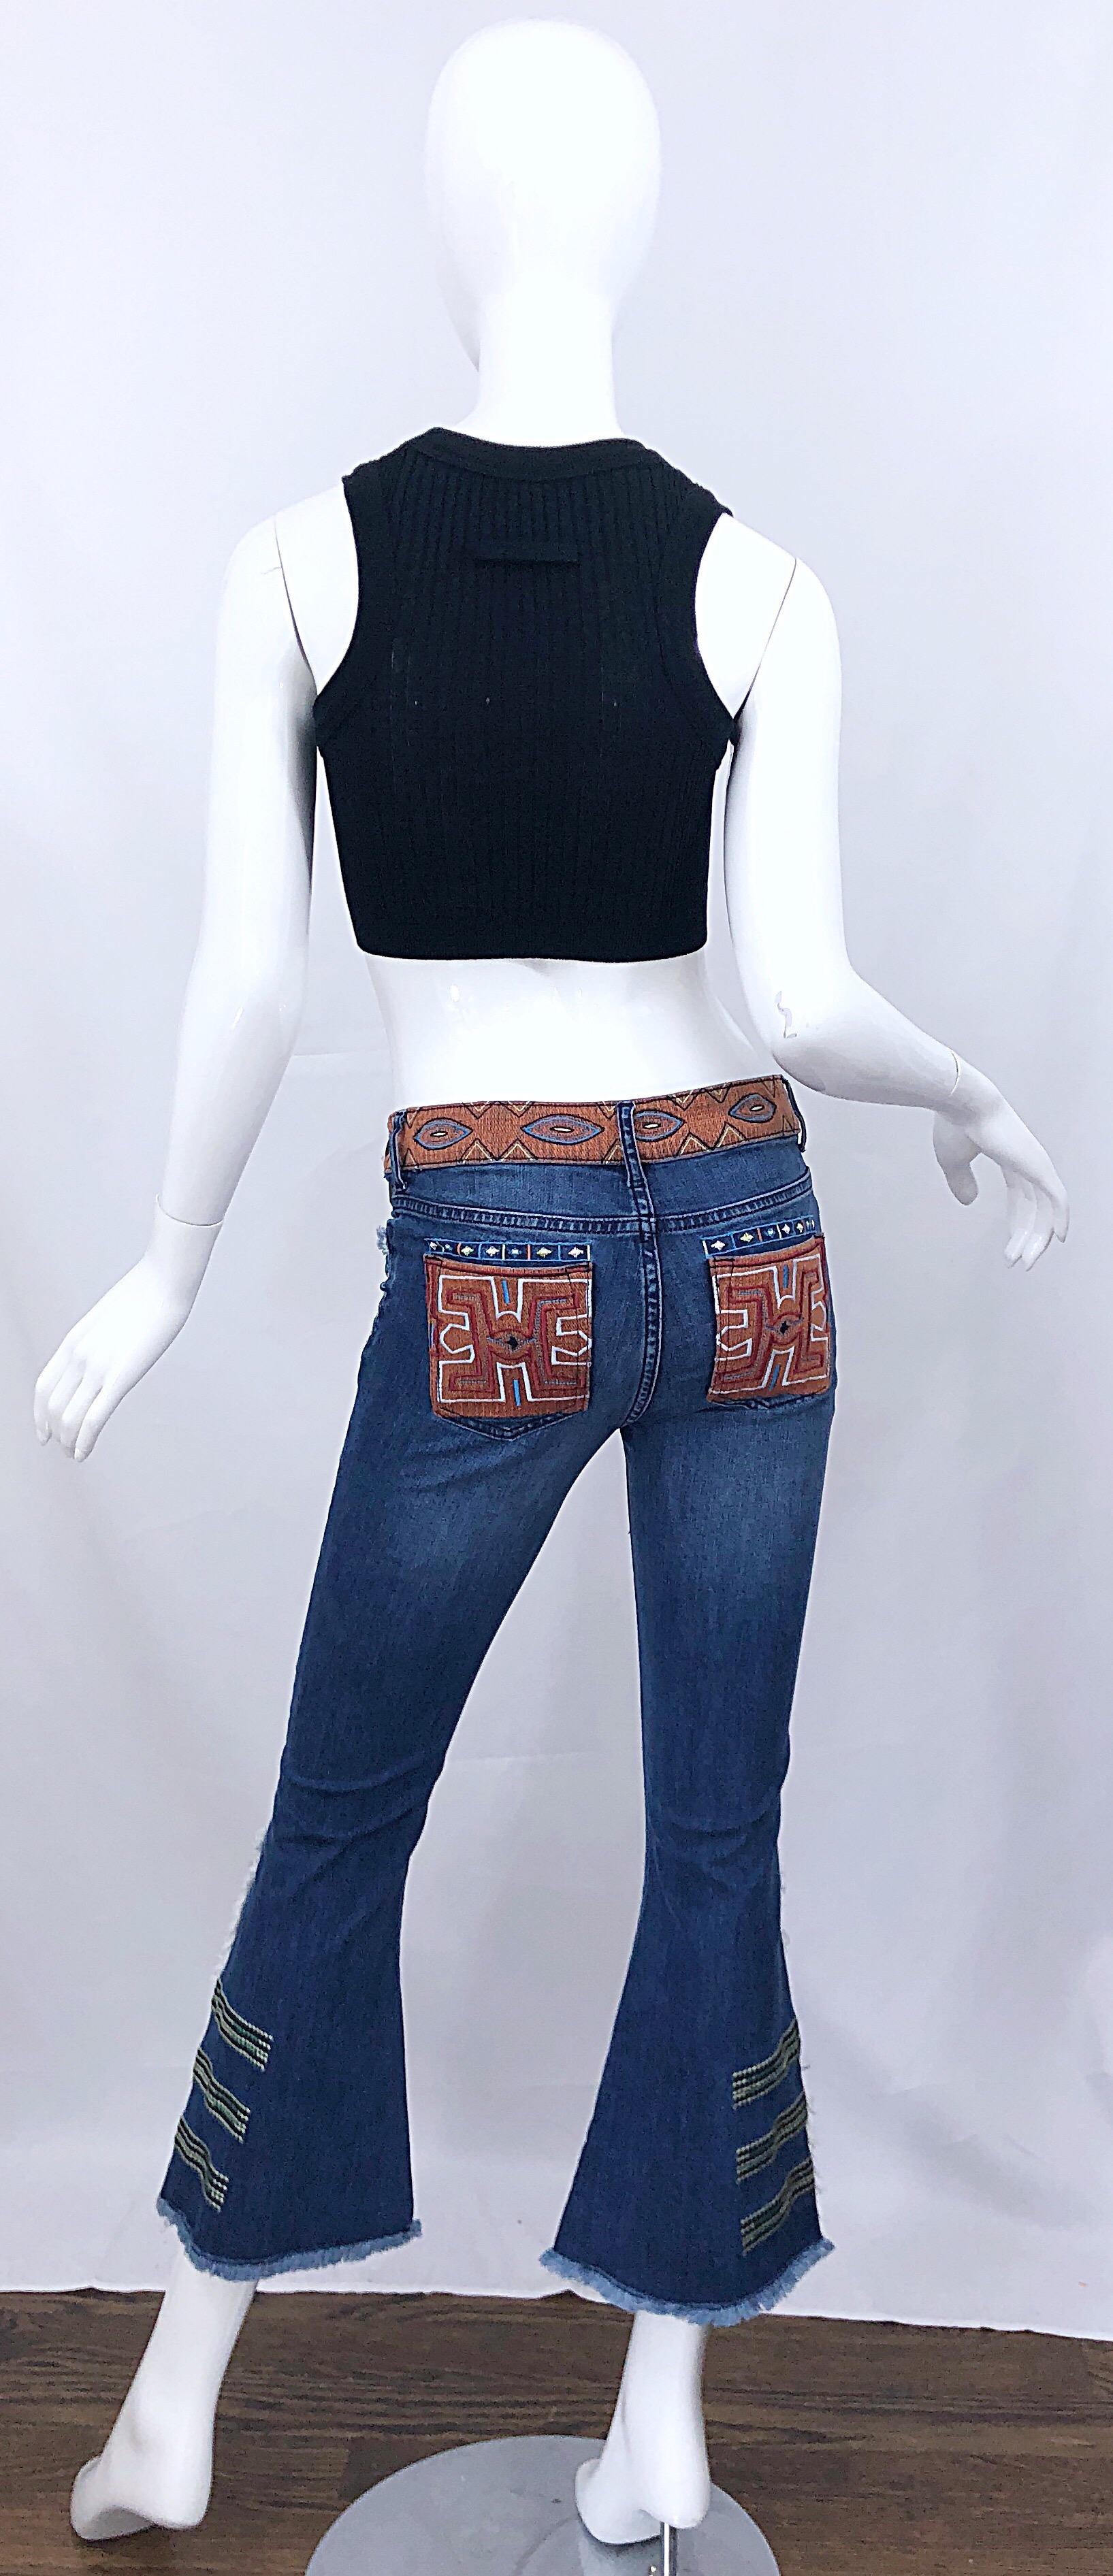 Rare marque neuve avec étiquettes, début des années 2000, vintage NICOLE MILLER ARTELIER, culotte à taille basse, jambes évasées, bord brut, en denim / blue jeans. Il est orné de broderies complexes dans des couleurs chaudes comme l'orange, le